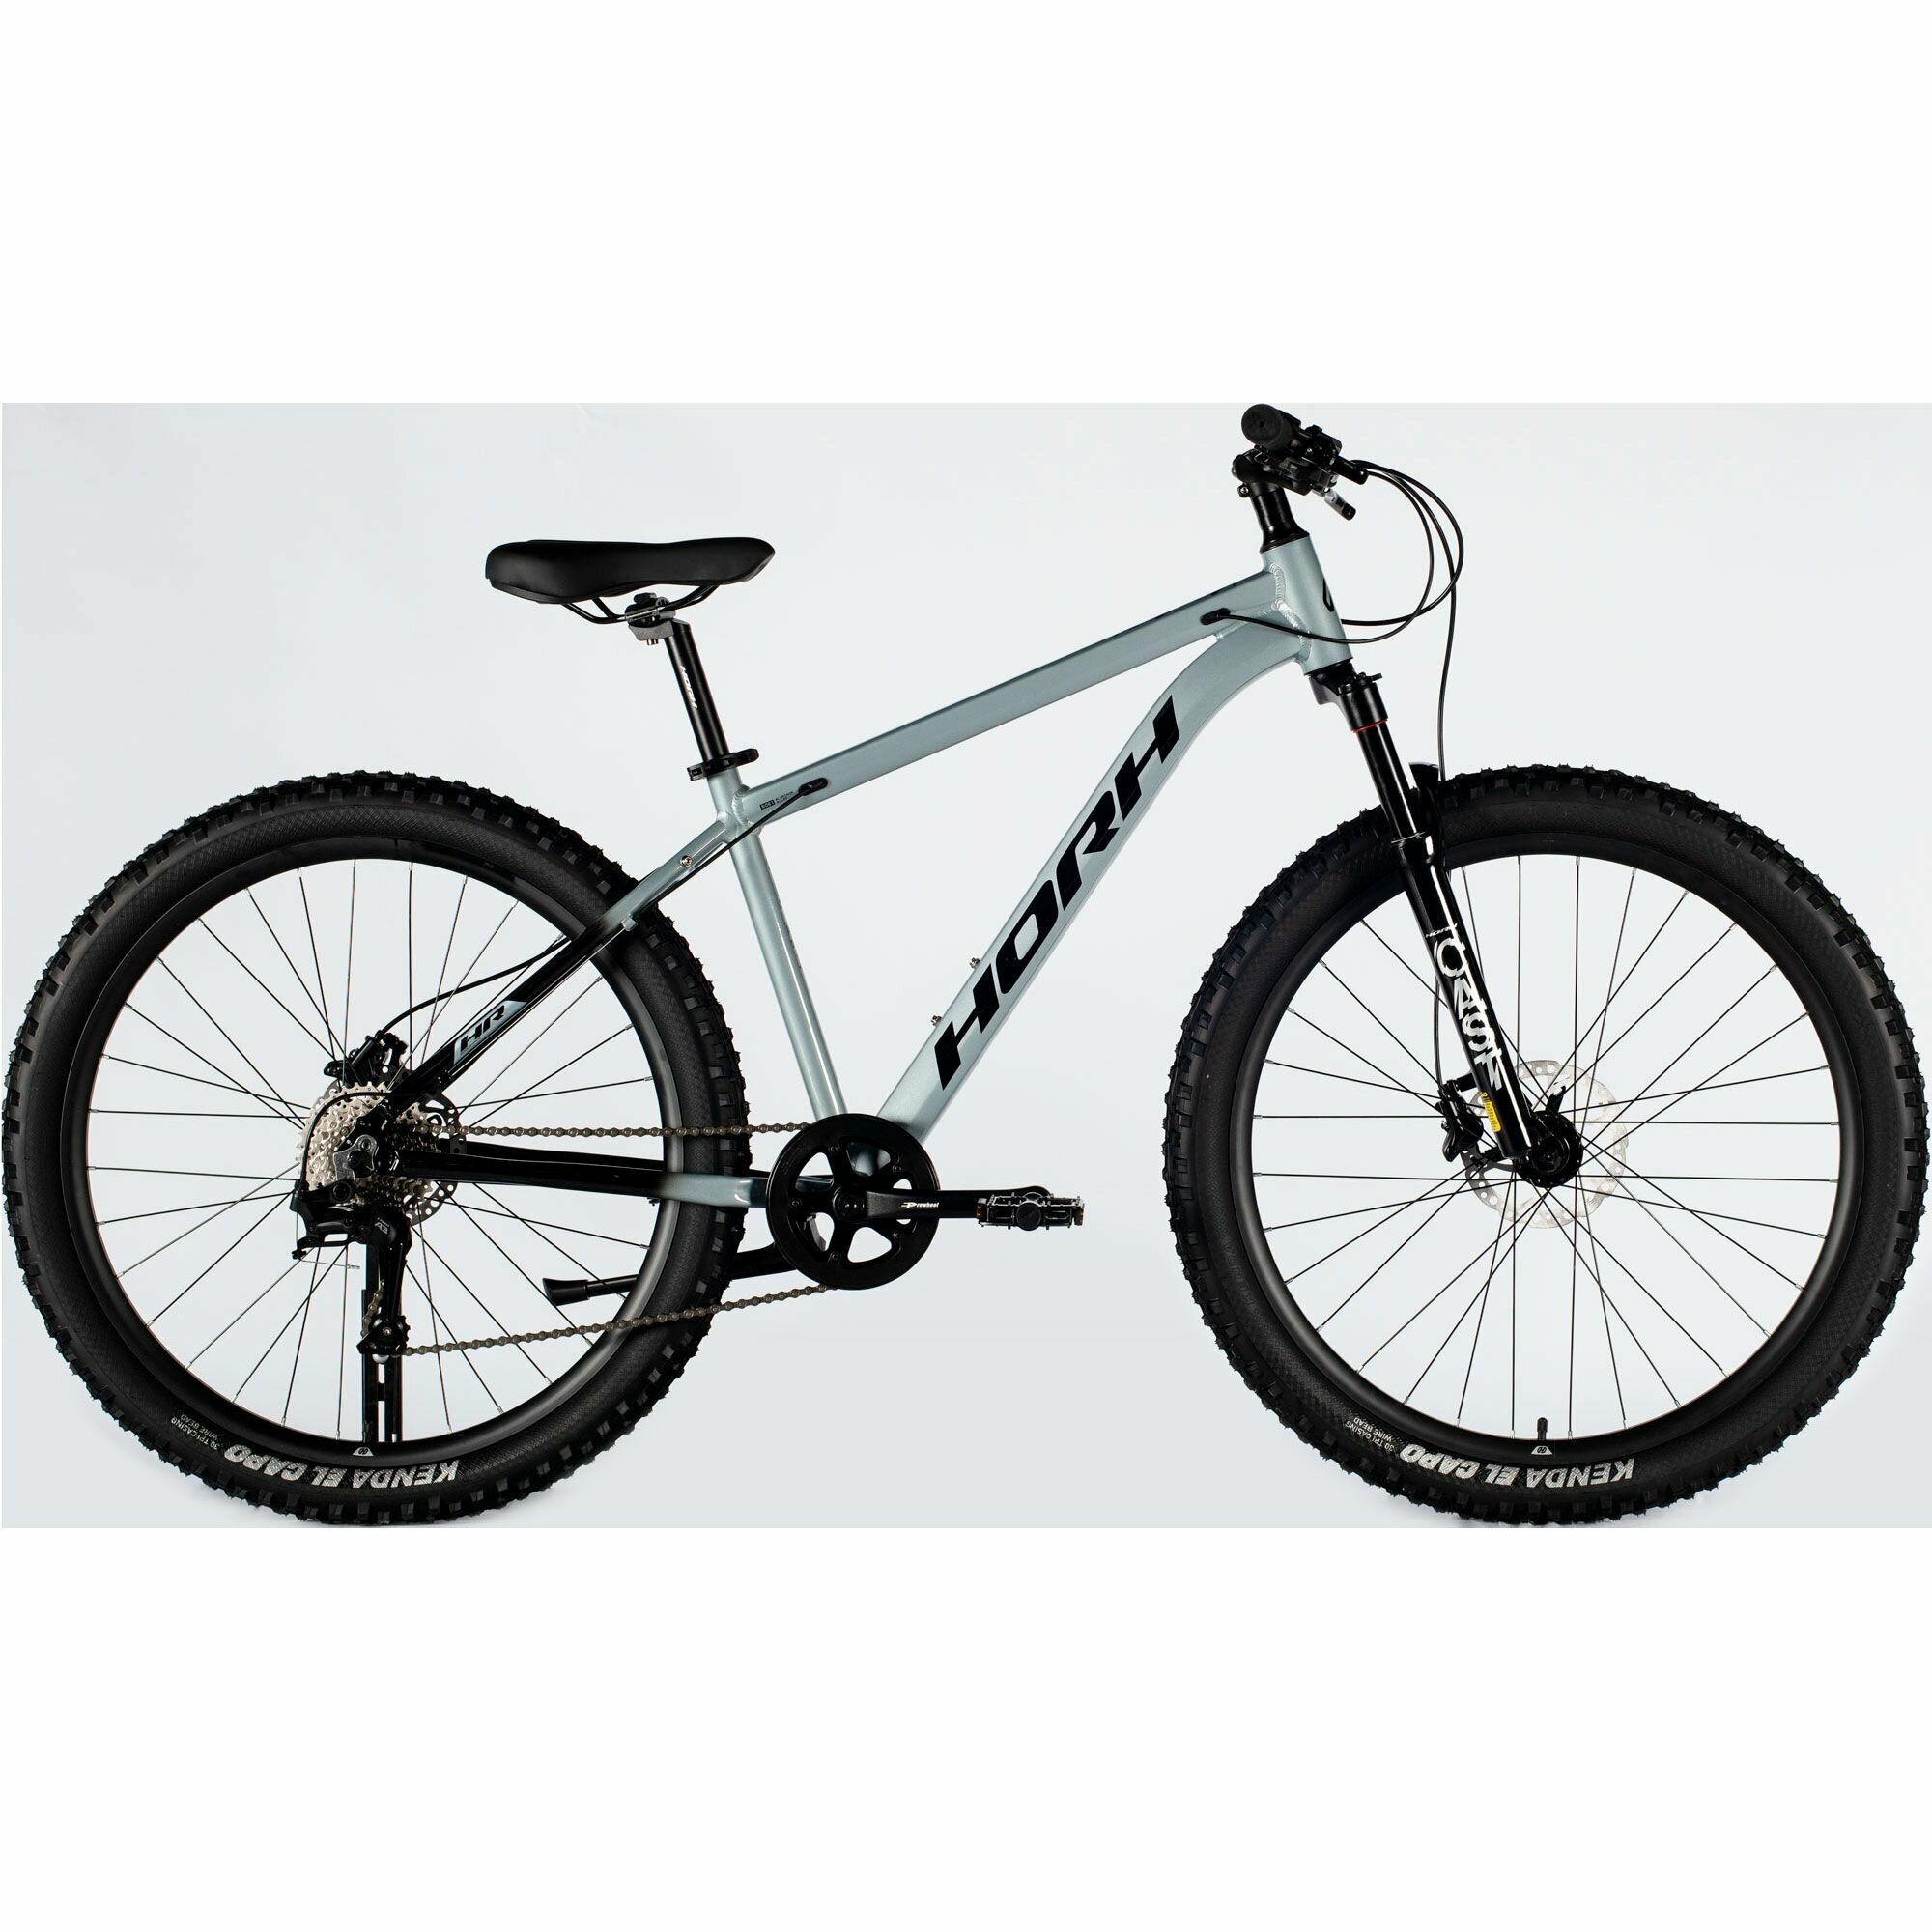 Велосипед горный HORH Cast AM 27,5" (2024), хардтейл, взрослый, мужской, алюминиевая рама, 8 скоростей, дисковые гидравлические тормоза, цвет Grey-Black, серый/черный цвет, размер рамы 17", для роста 170-180 см